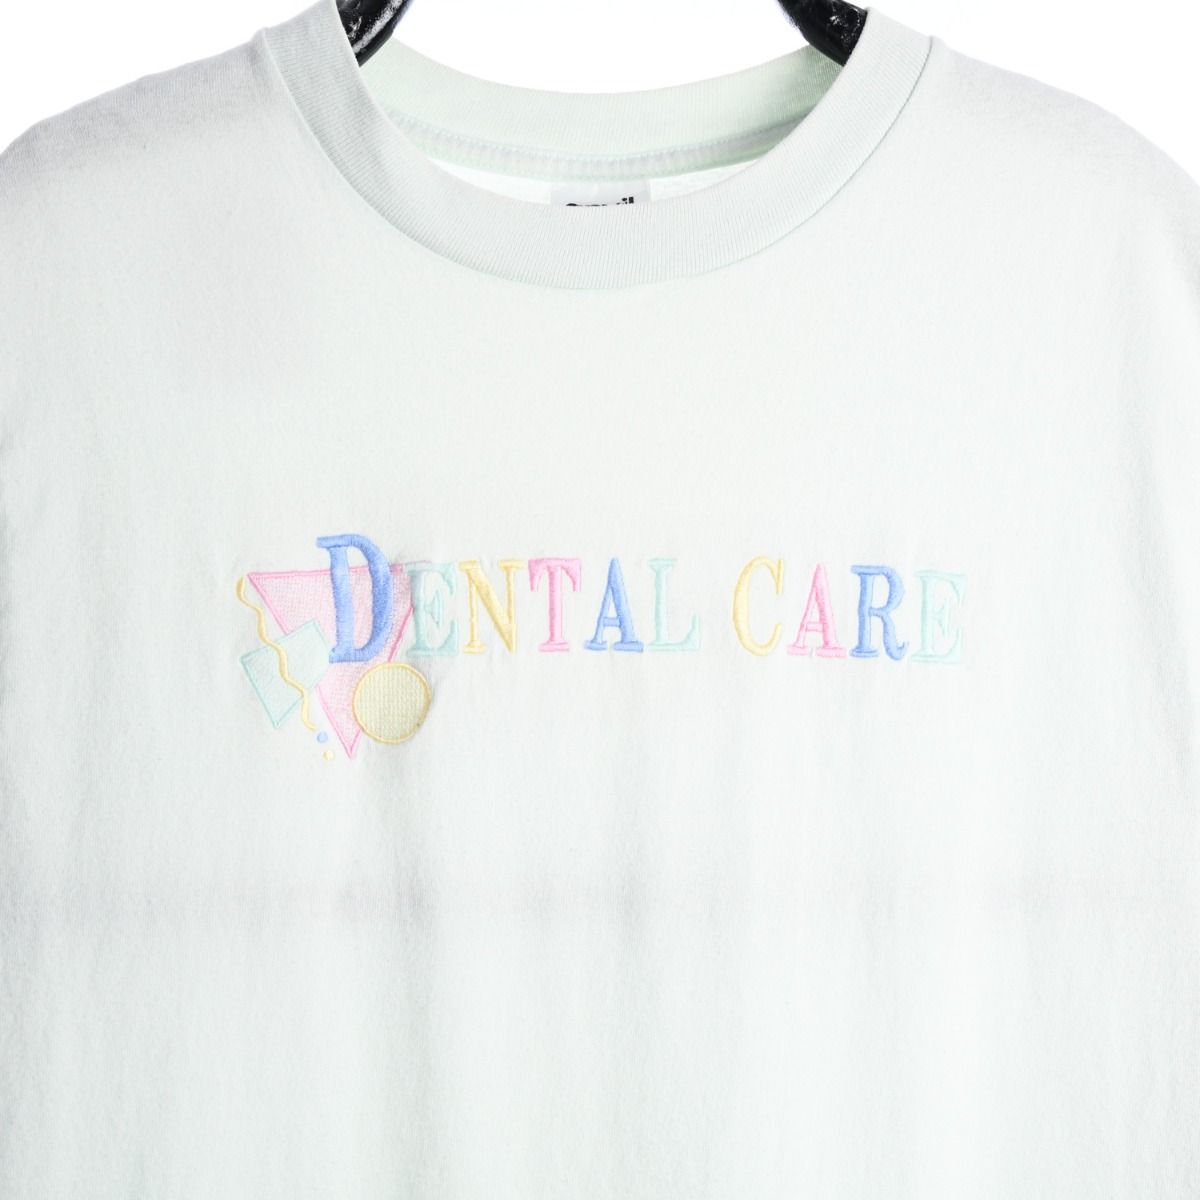 'Dental Care' 1990s T-Shirt